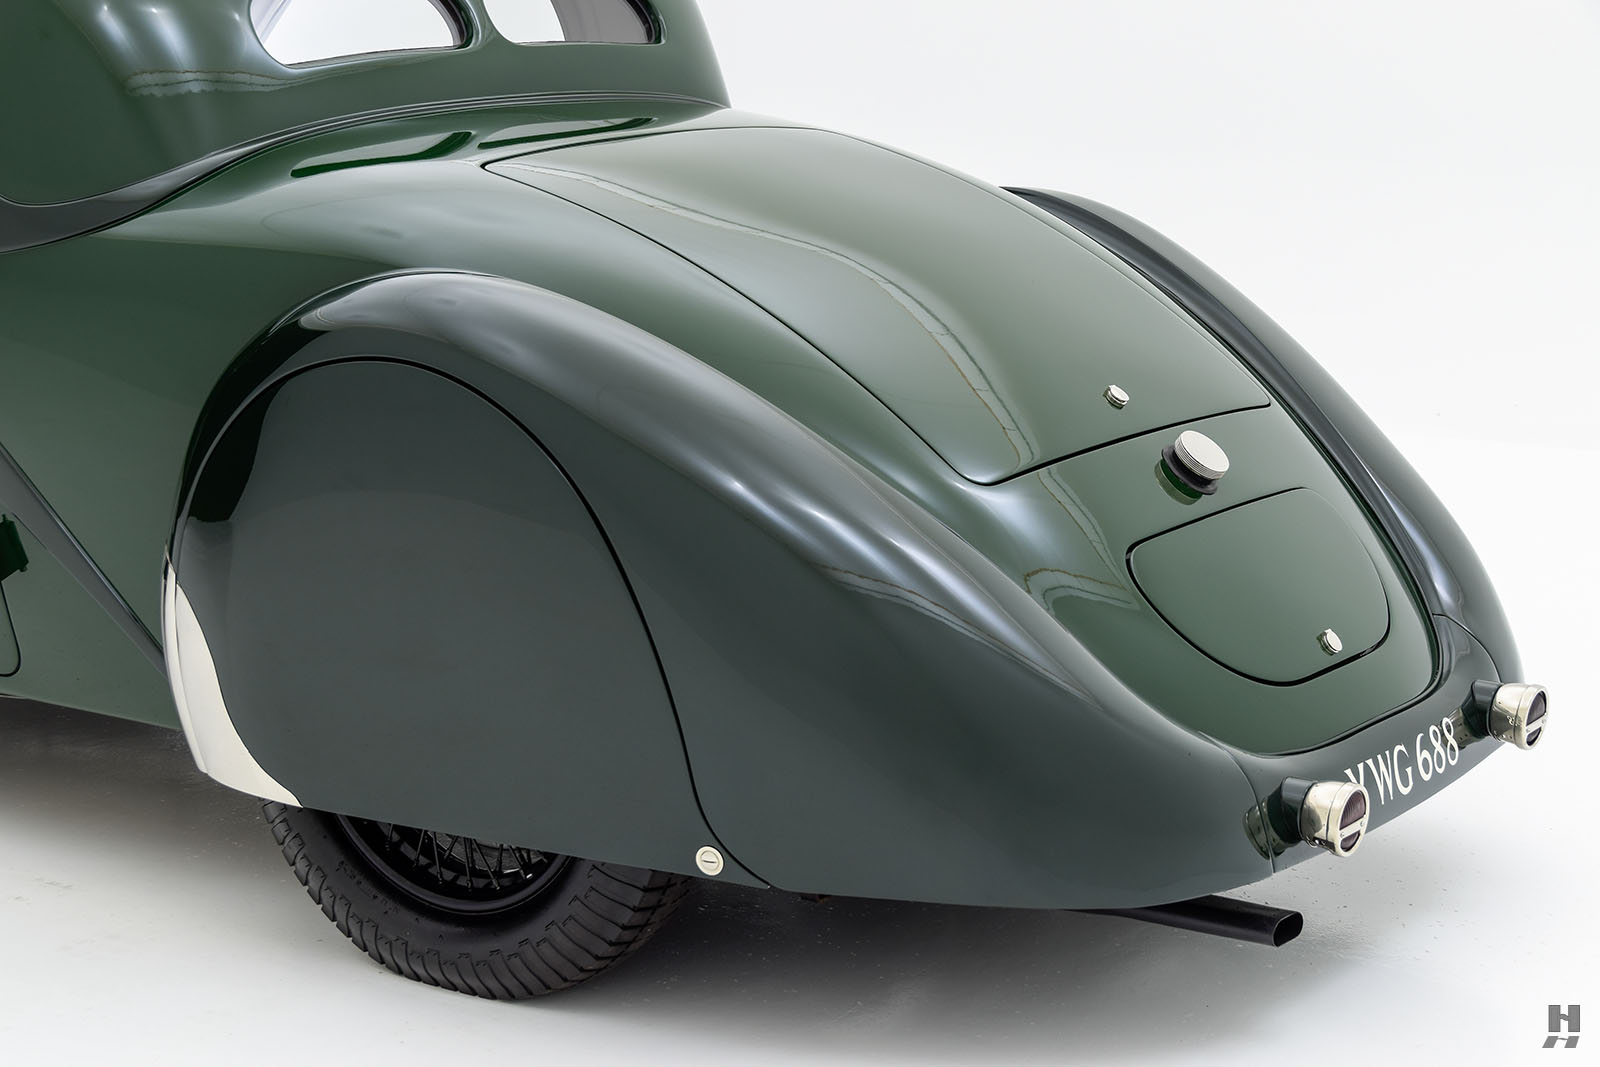 1939 bugatti type 57 ventoux